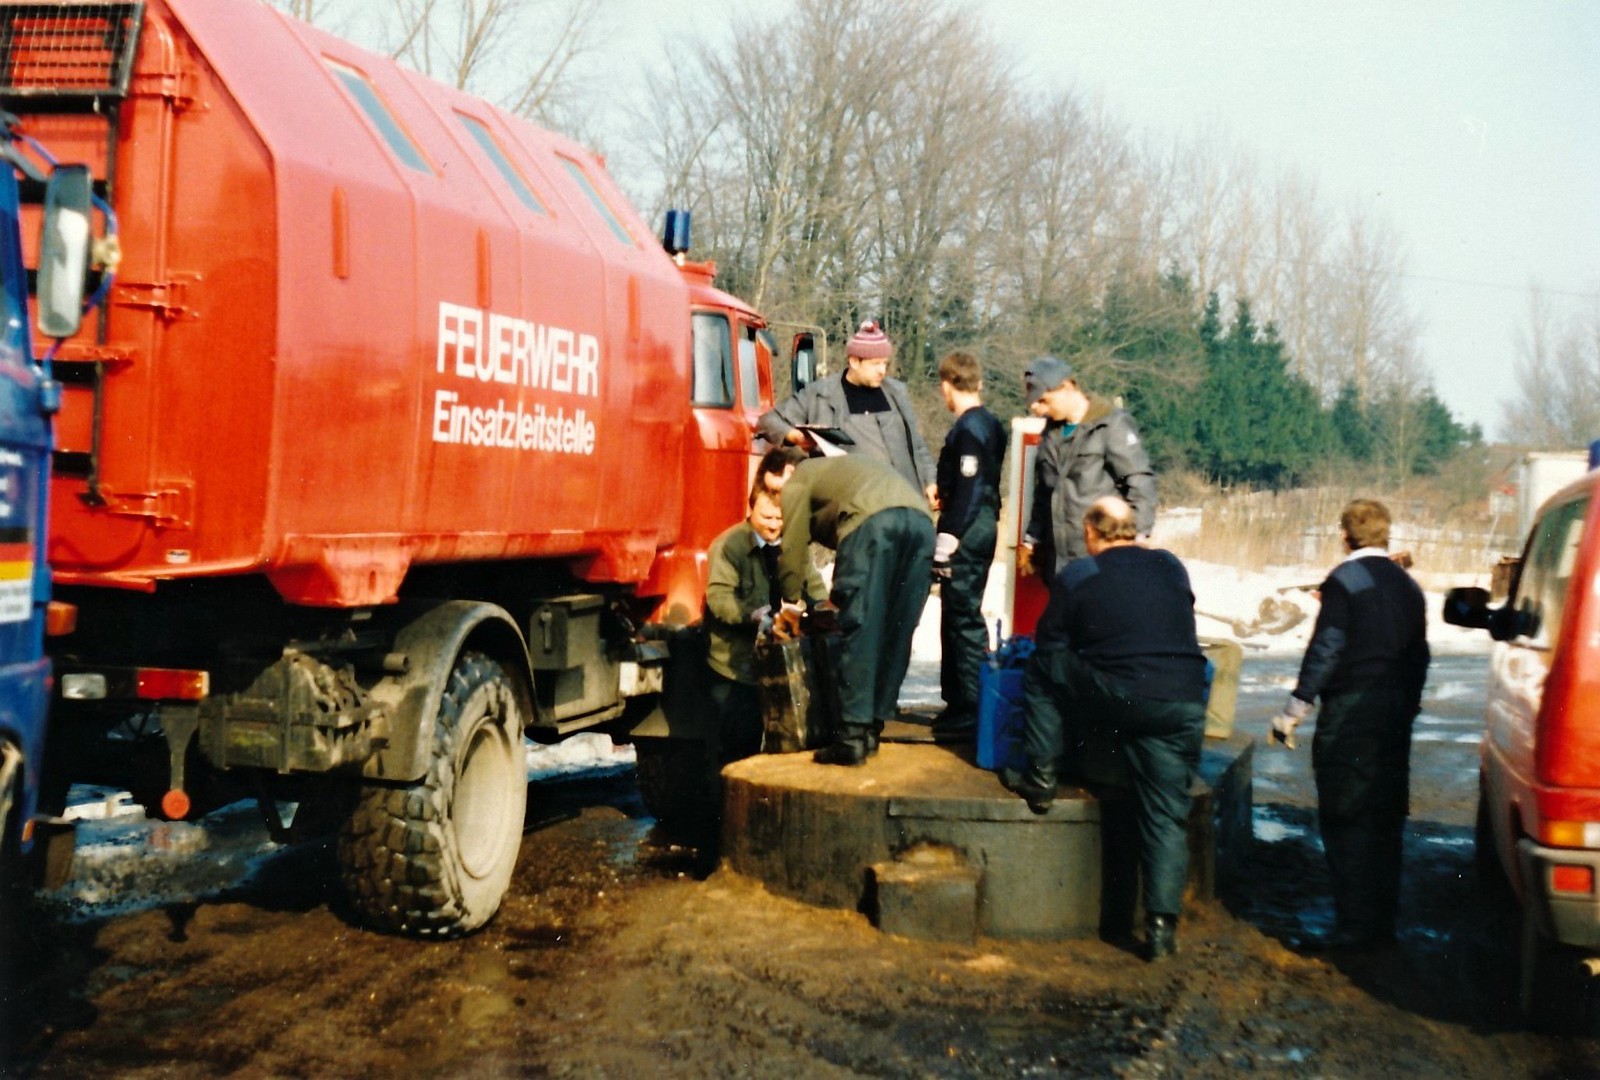 1992 HumanitäreHilfe 016 Witebsk